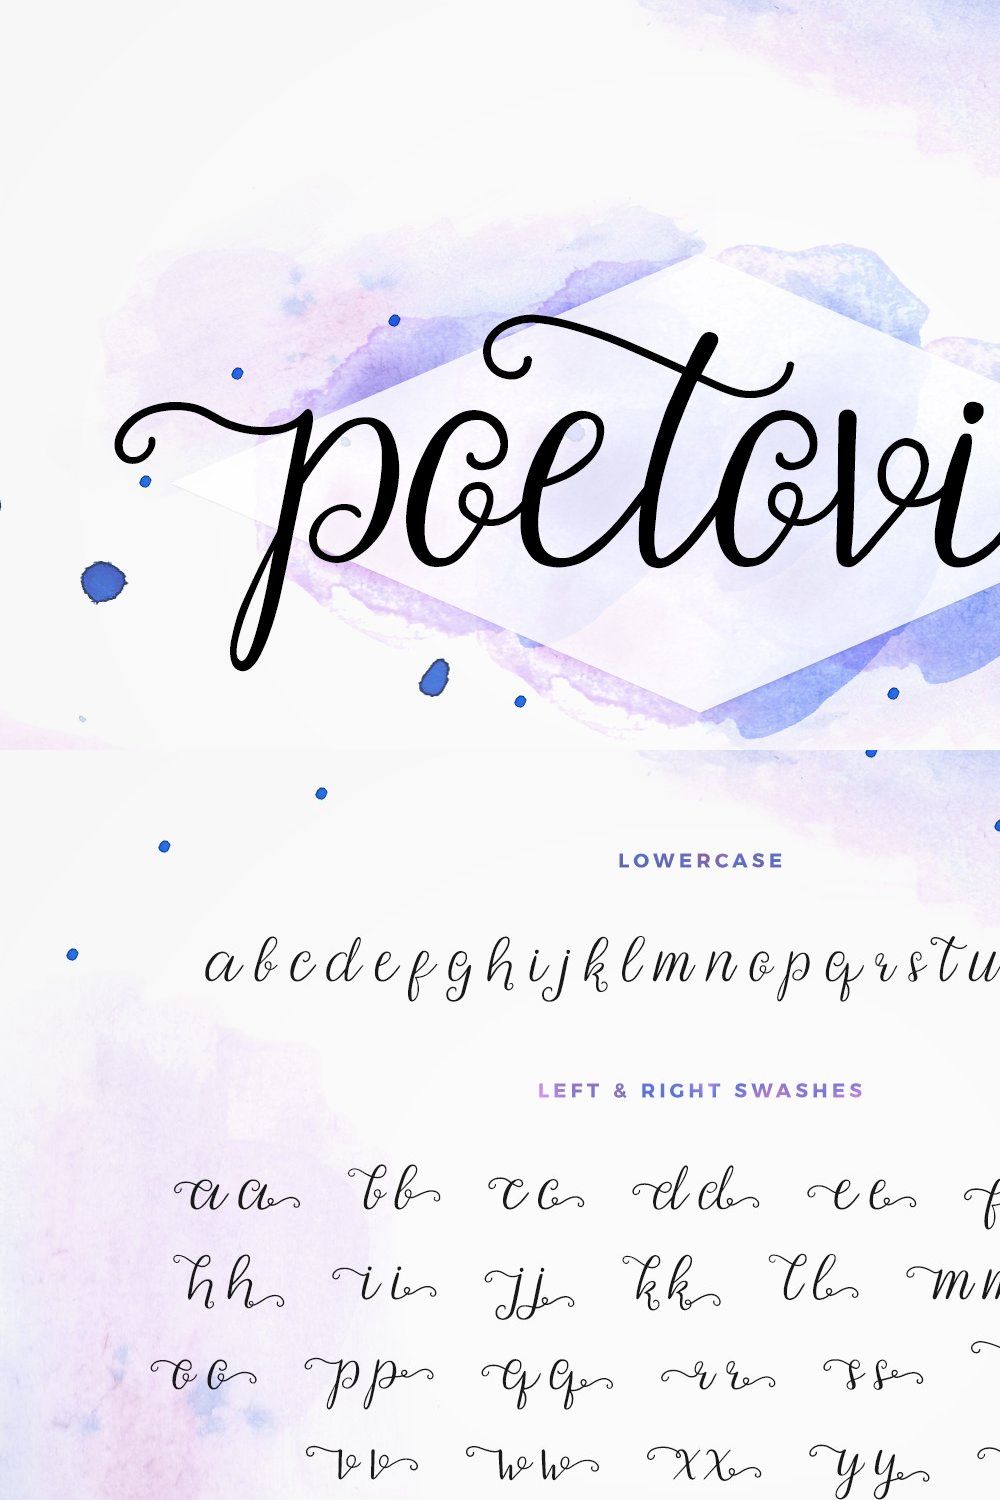 Poetovio - Poetic calligraphy pinterest preview image.